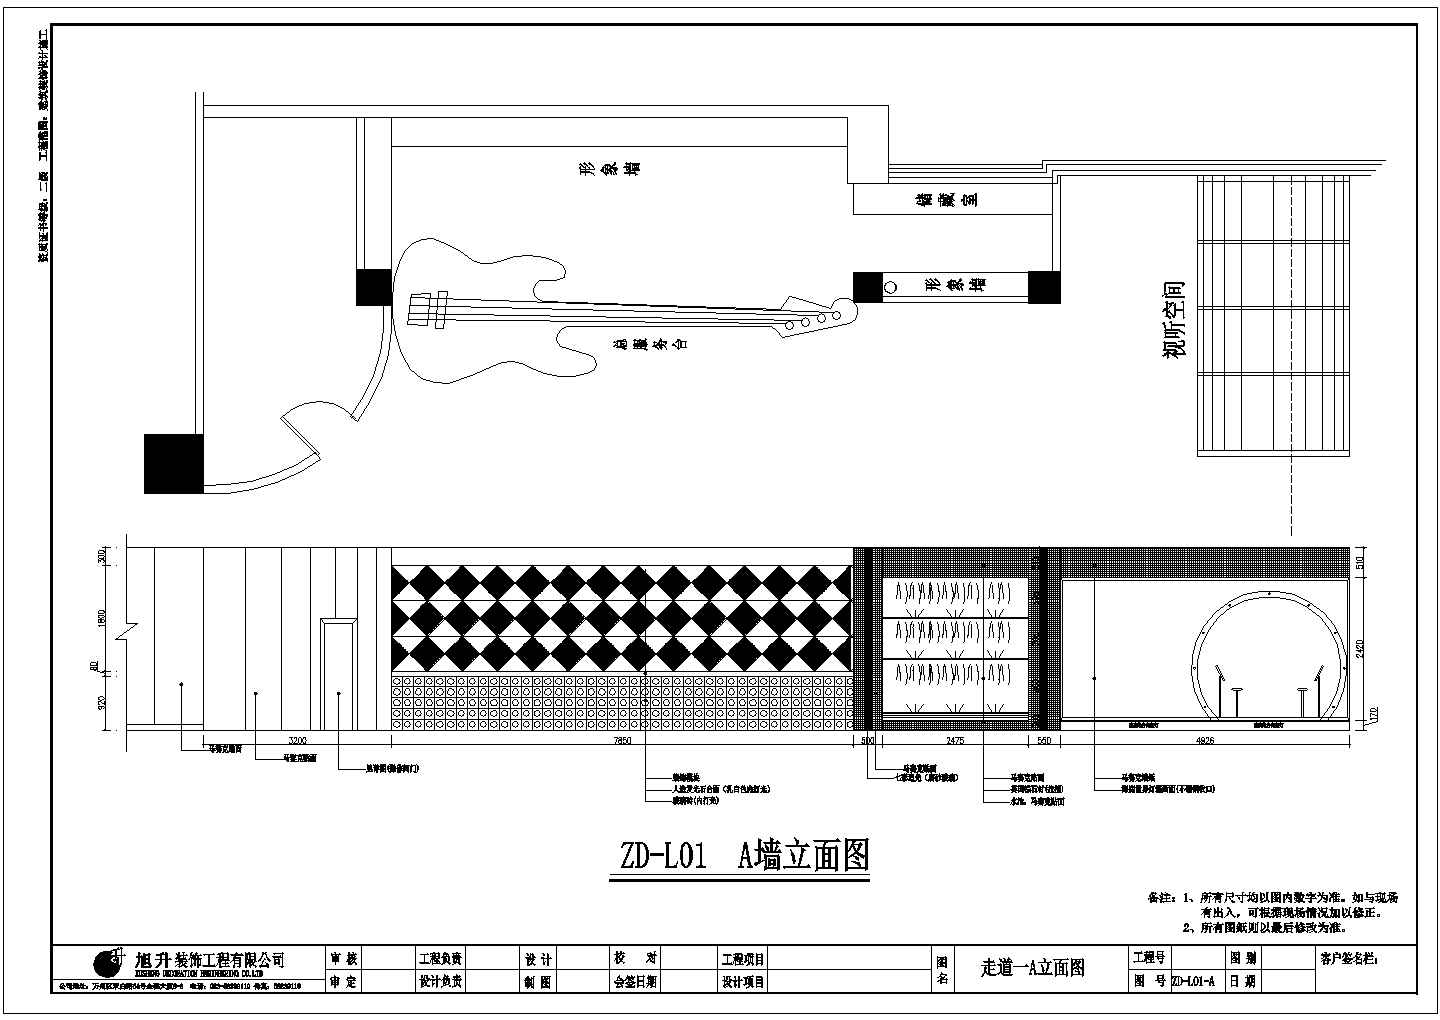 百乐汇大型娱乐场所设计装修施工图